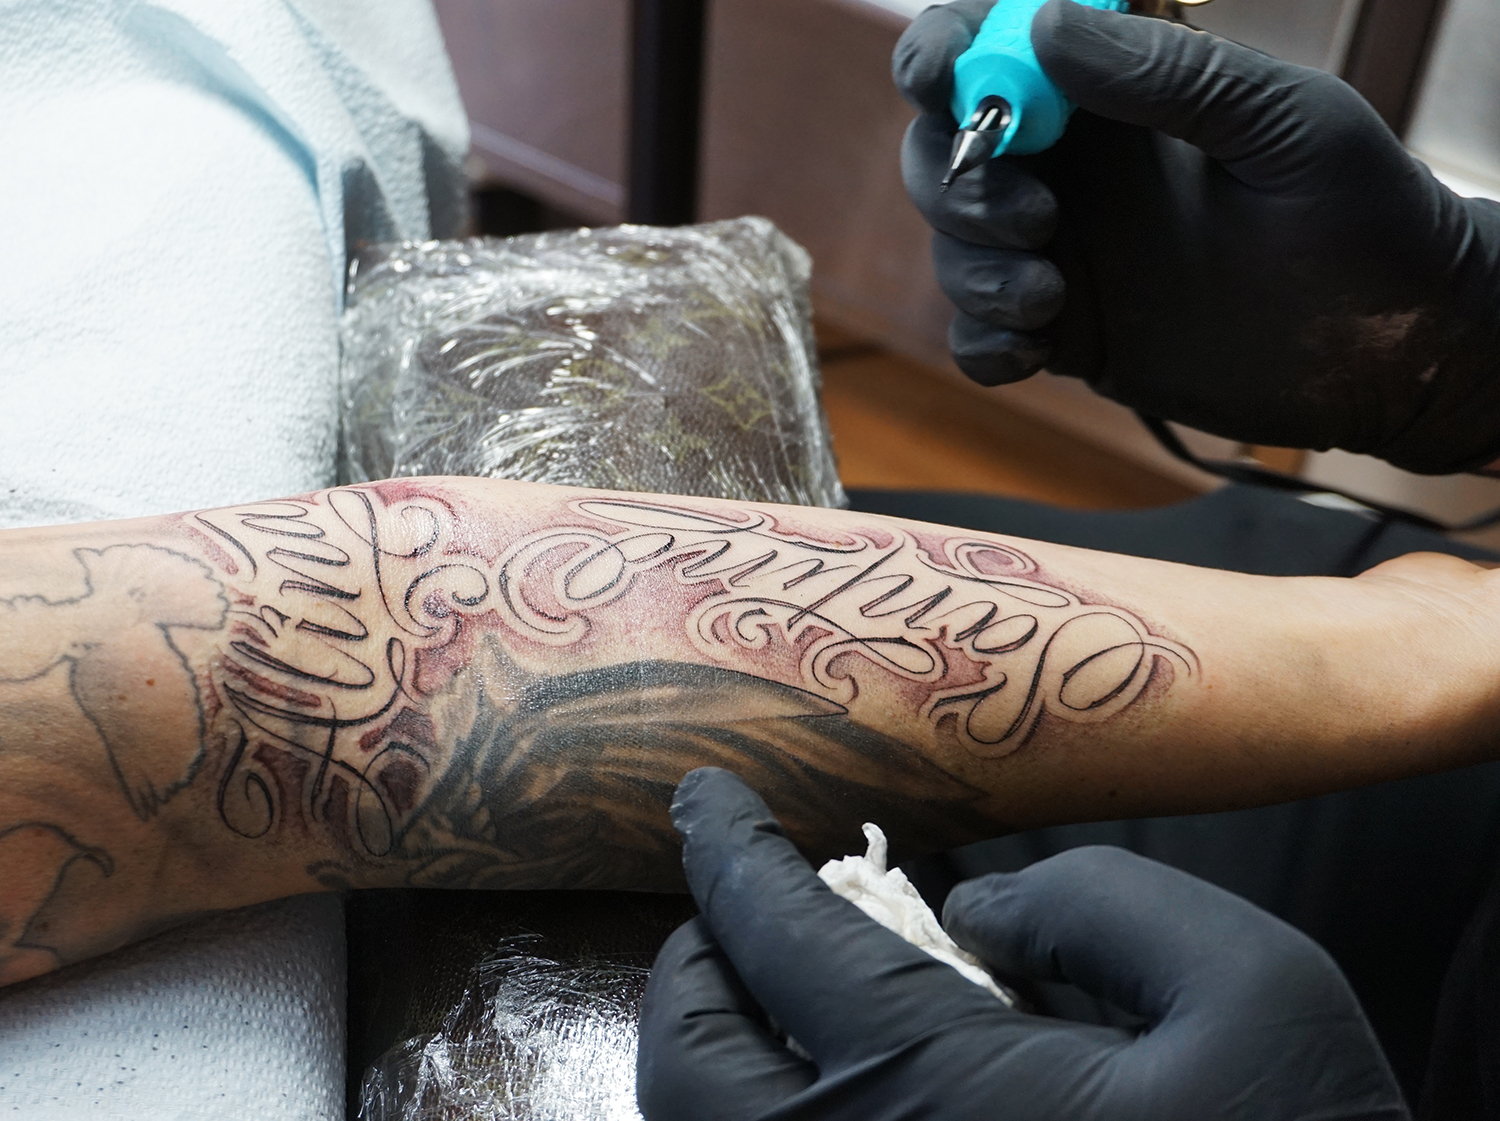 Incorporer du texte dans la conception du tatouage serait vraiment cool.